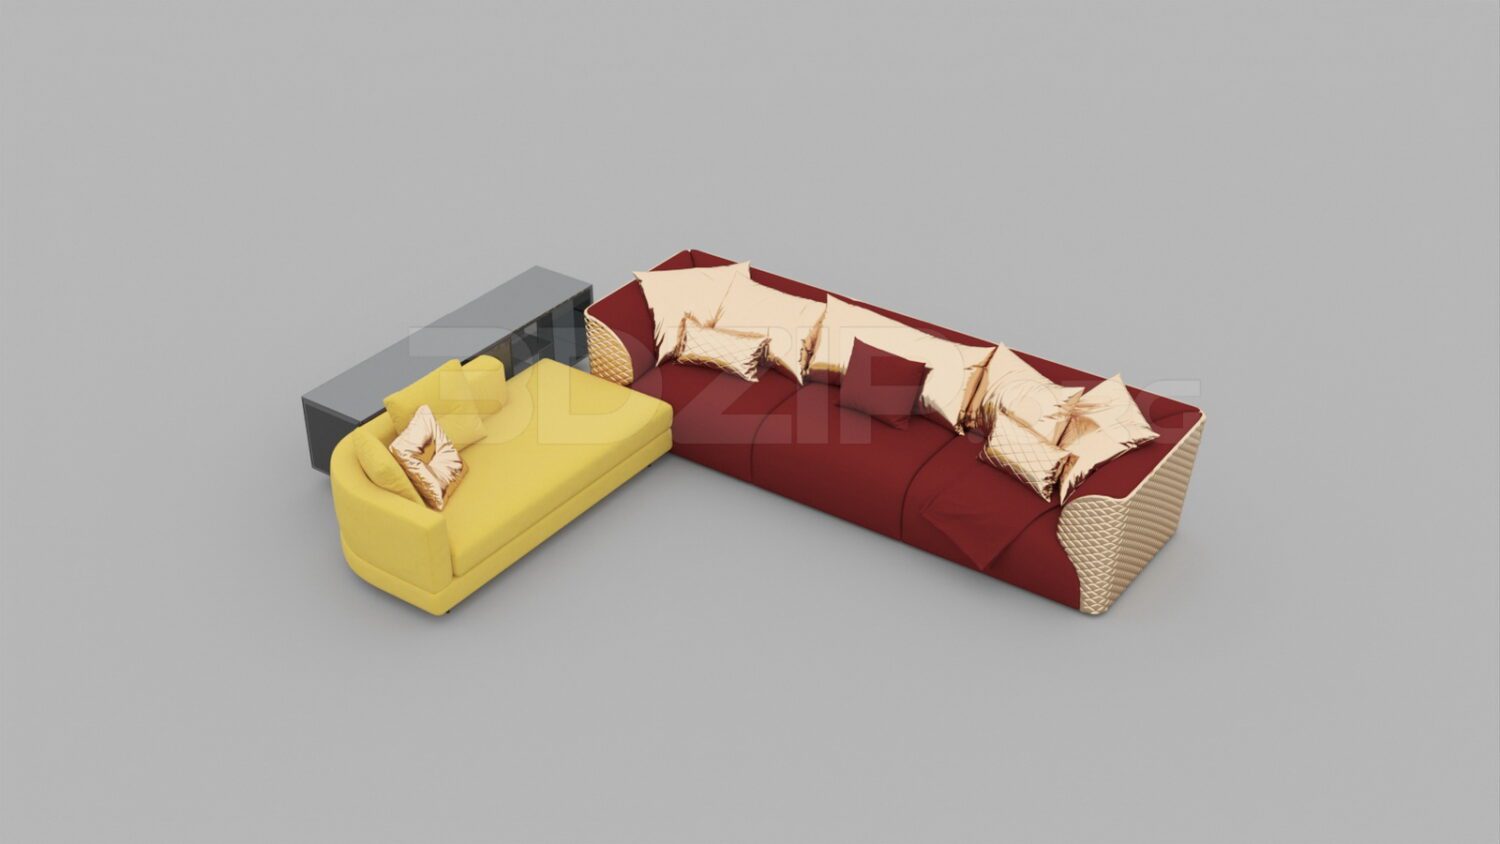 3256. Free 3D Sofa Model Download